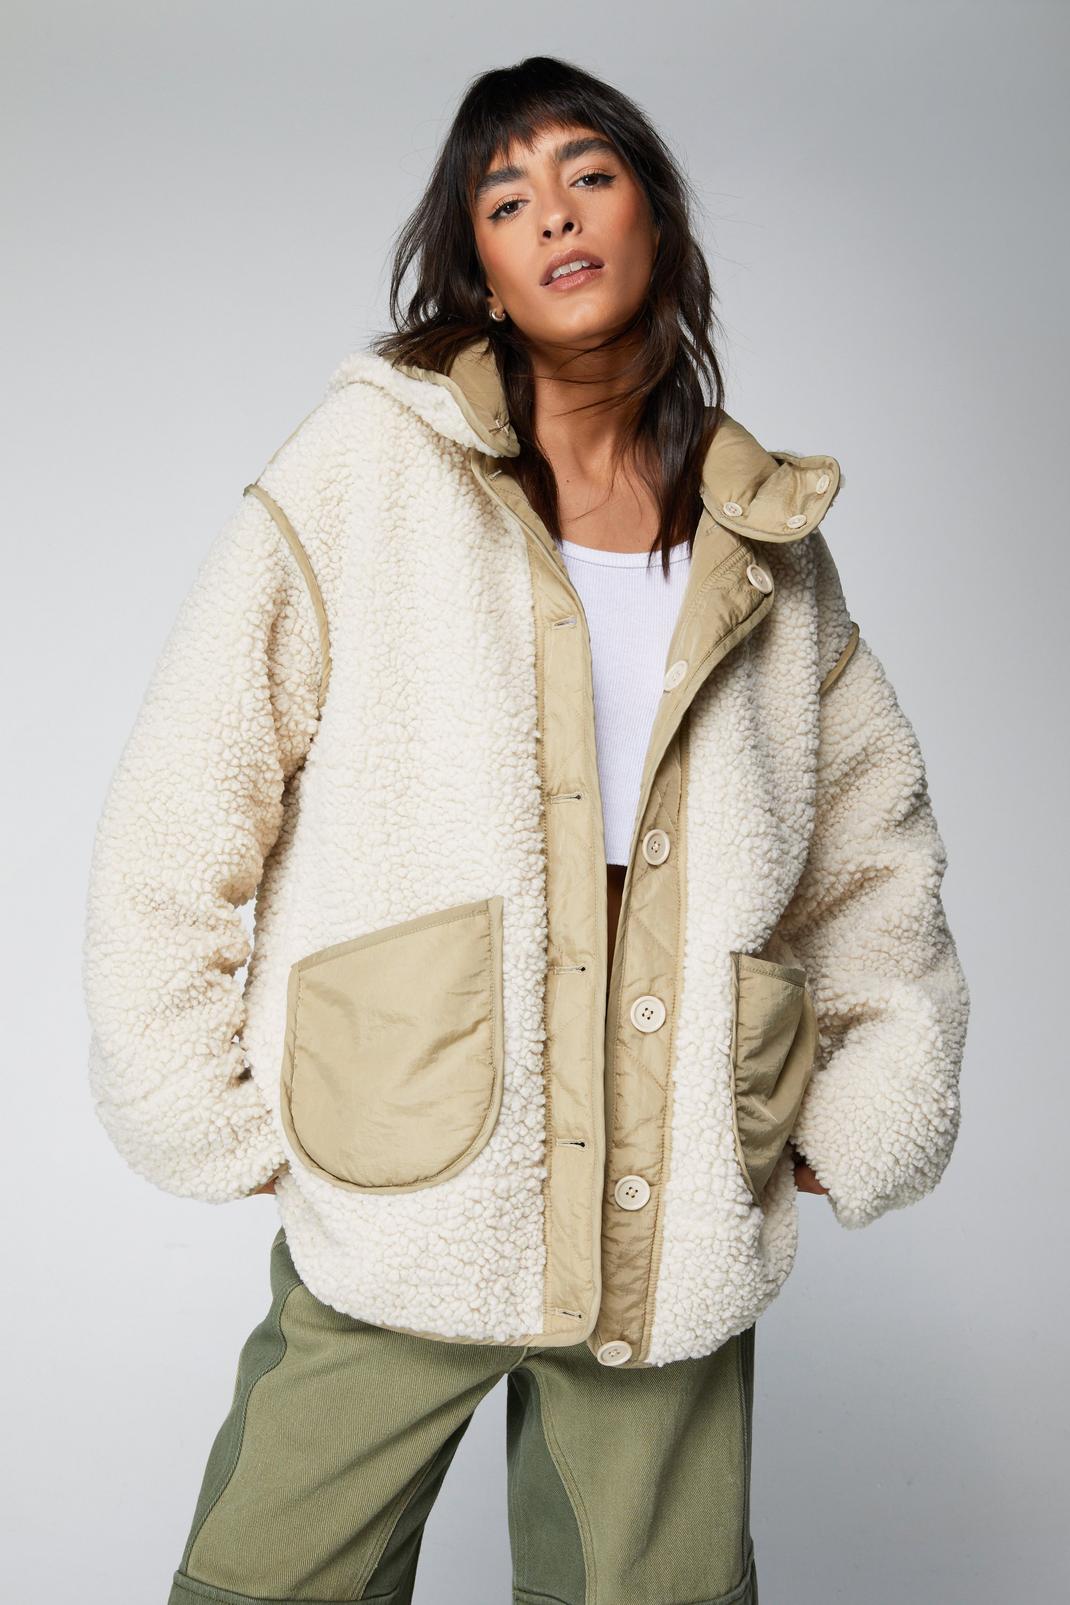 Oversized Sherpa Jacket Women's Warm Fuzzy Fleece Cute Teddy Bear